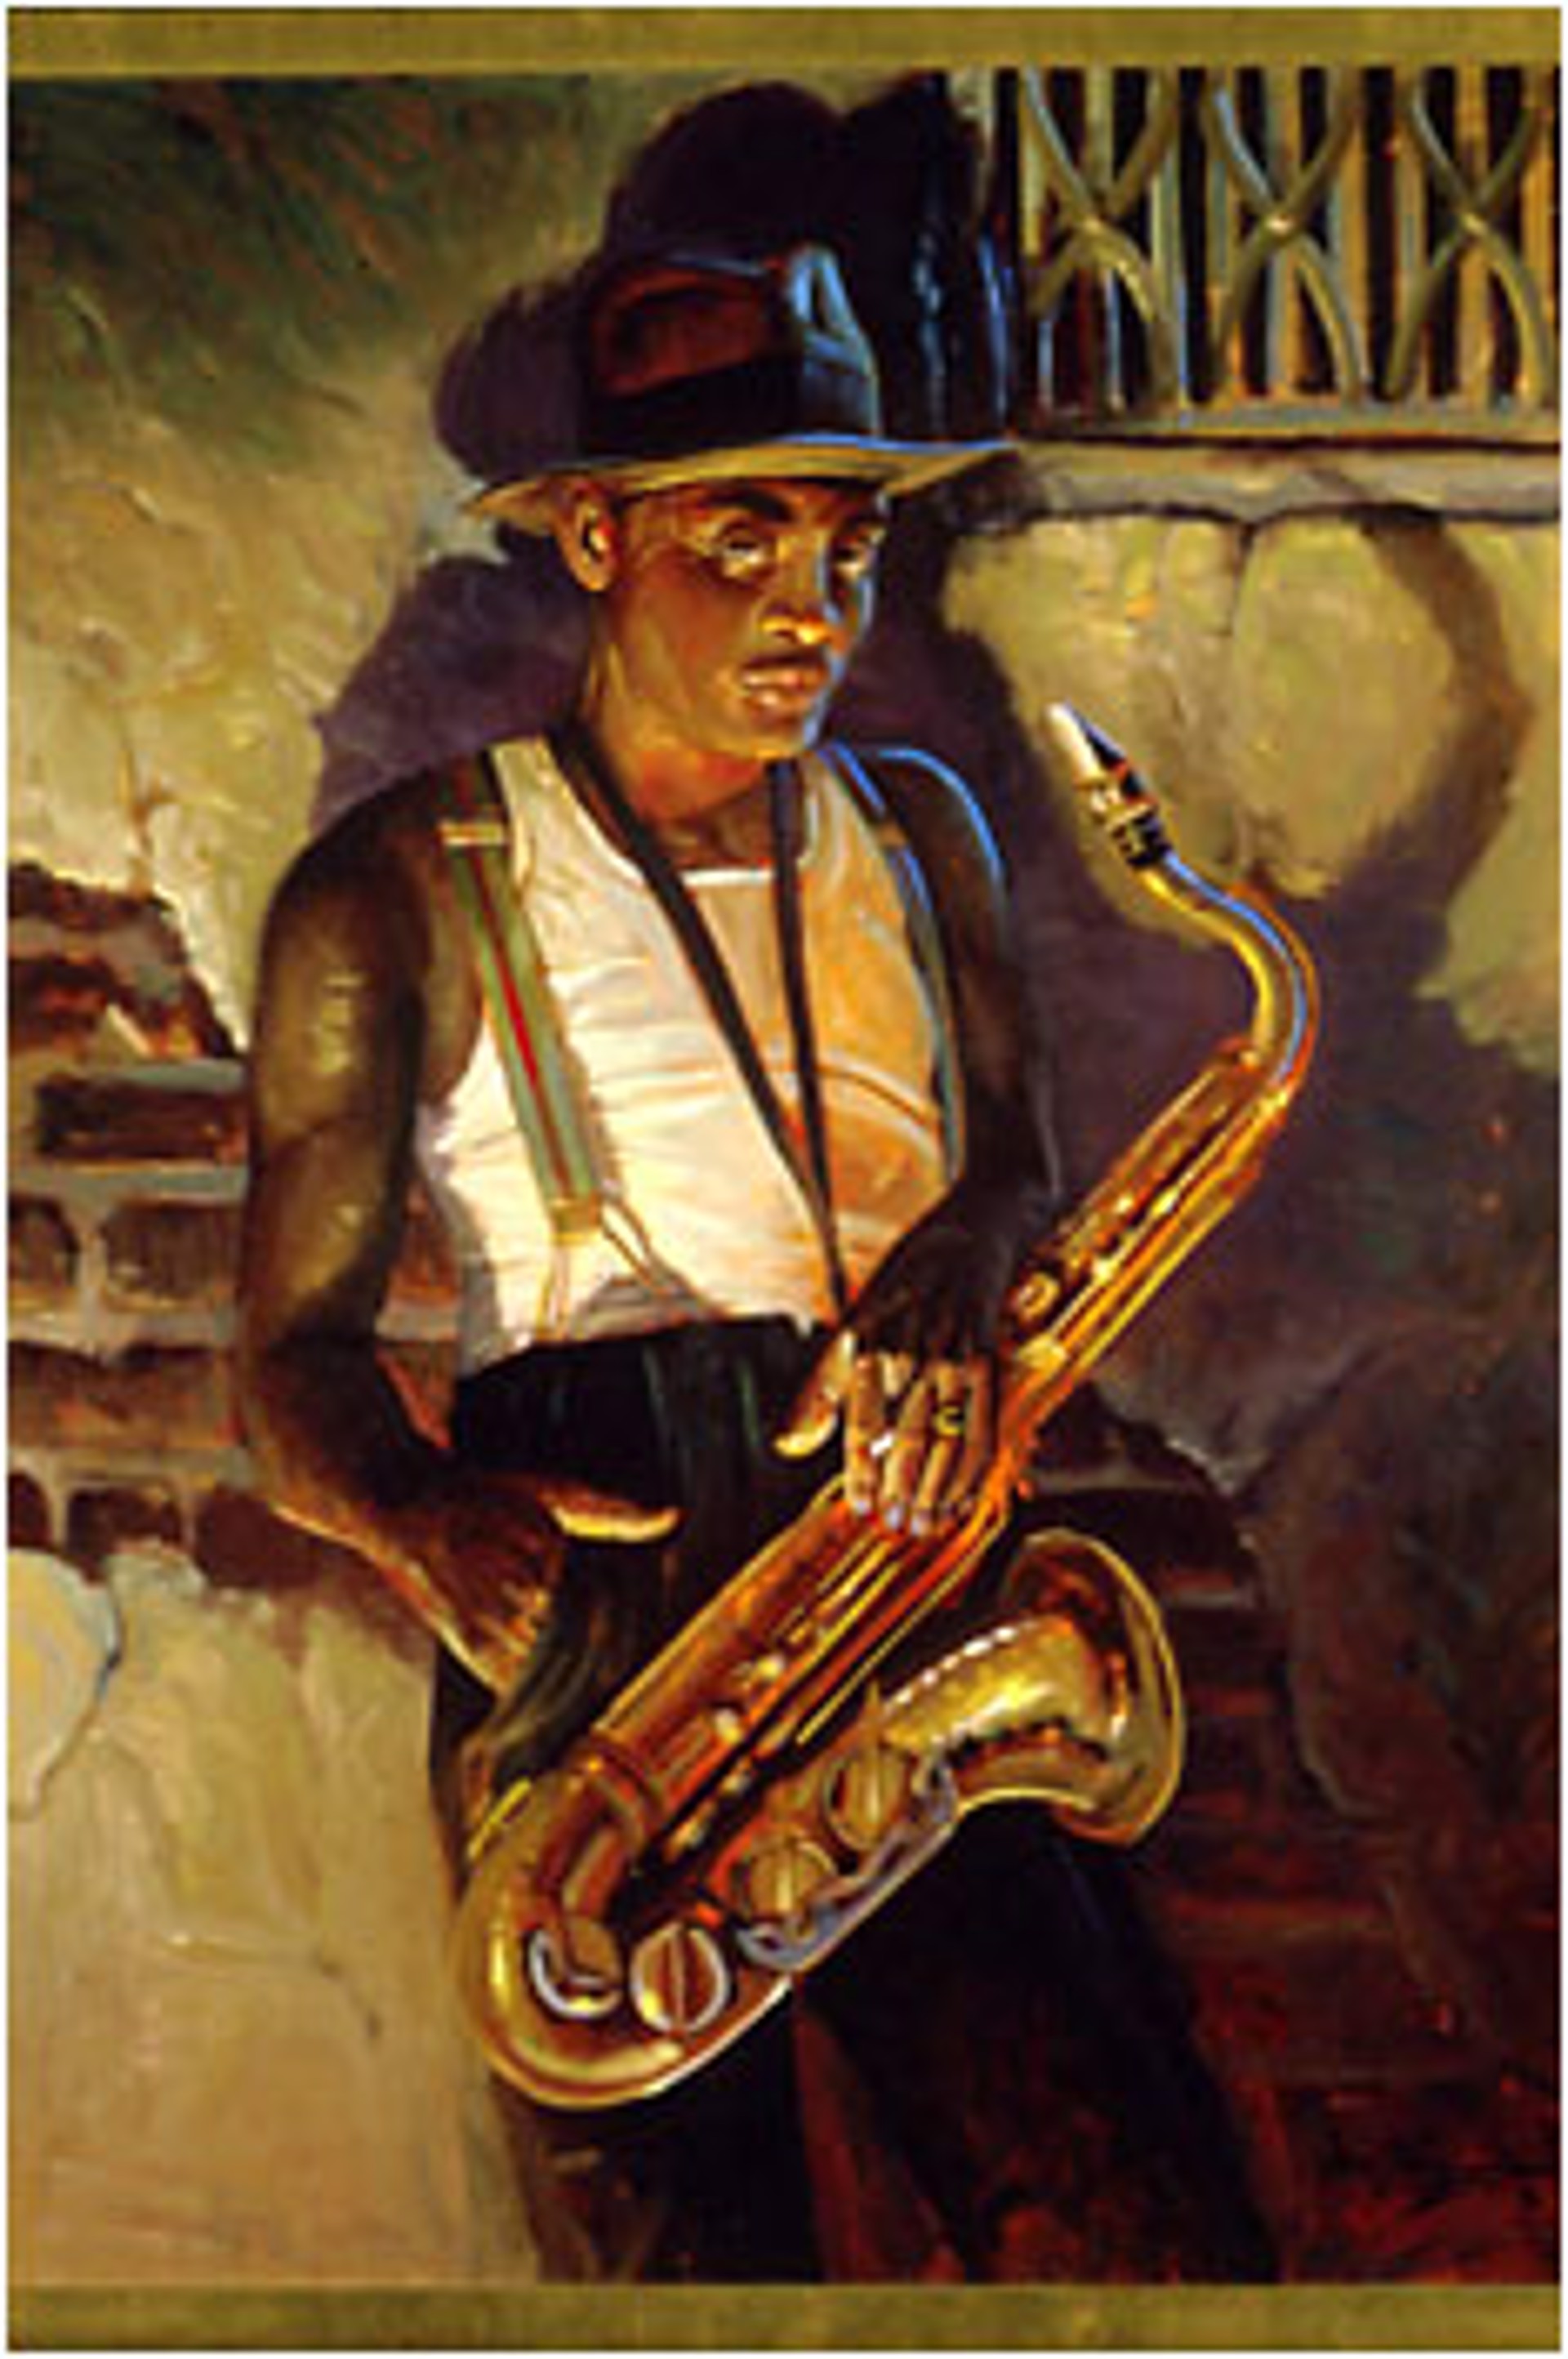 Sax Man by John Carroll Doyle